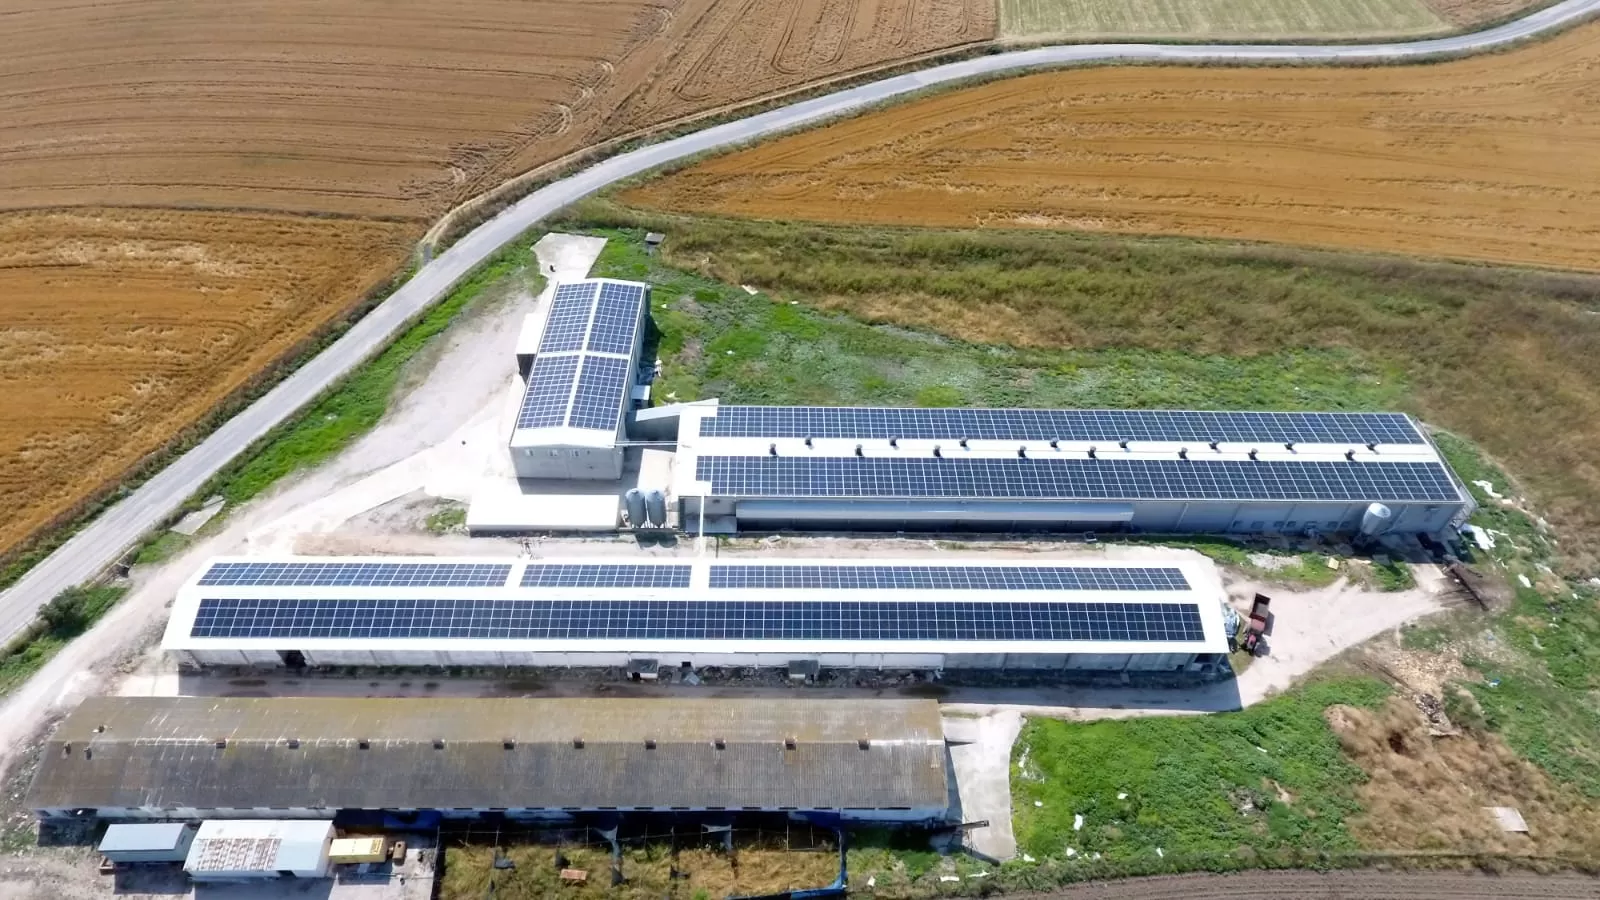 Güneş Panellerinin Gelişimi: Temiz Enerjiye Yenilikçi Bakış